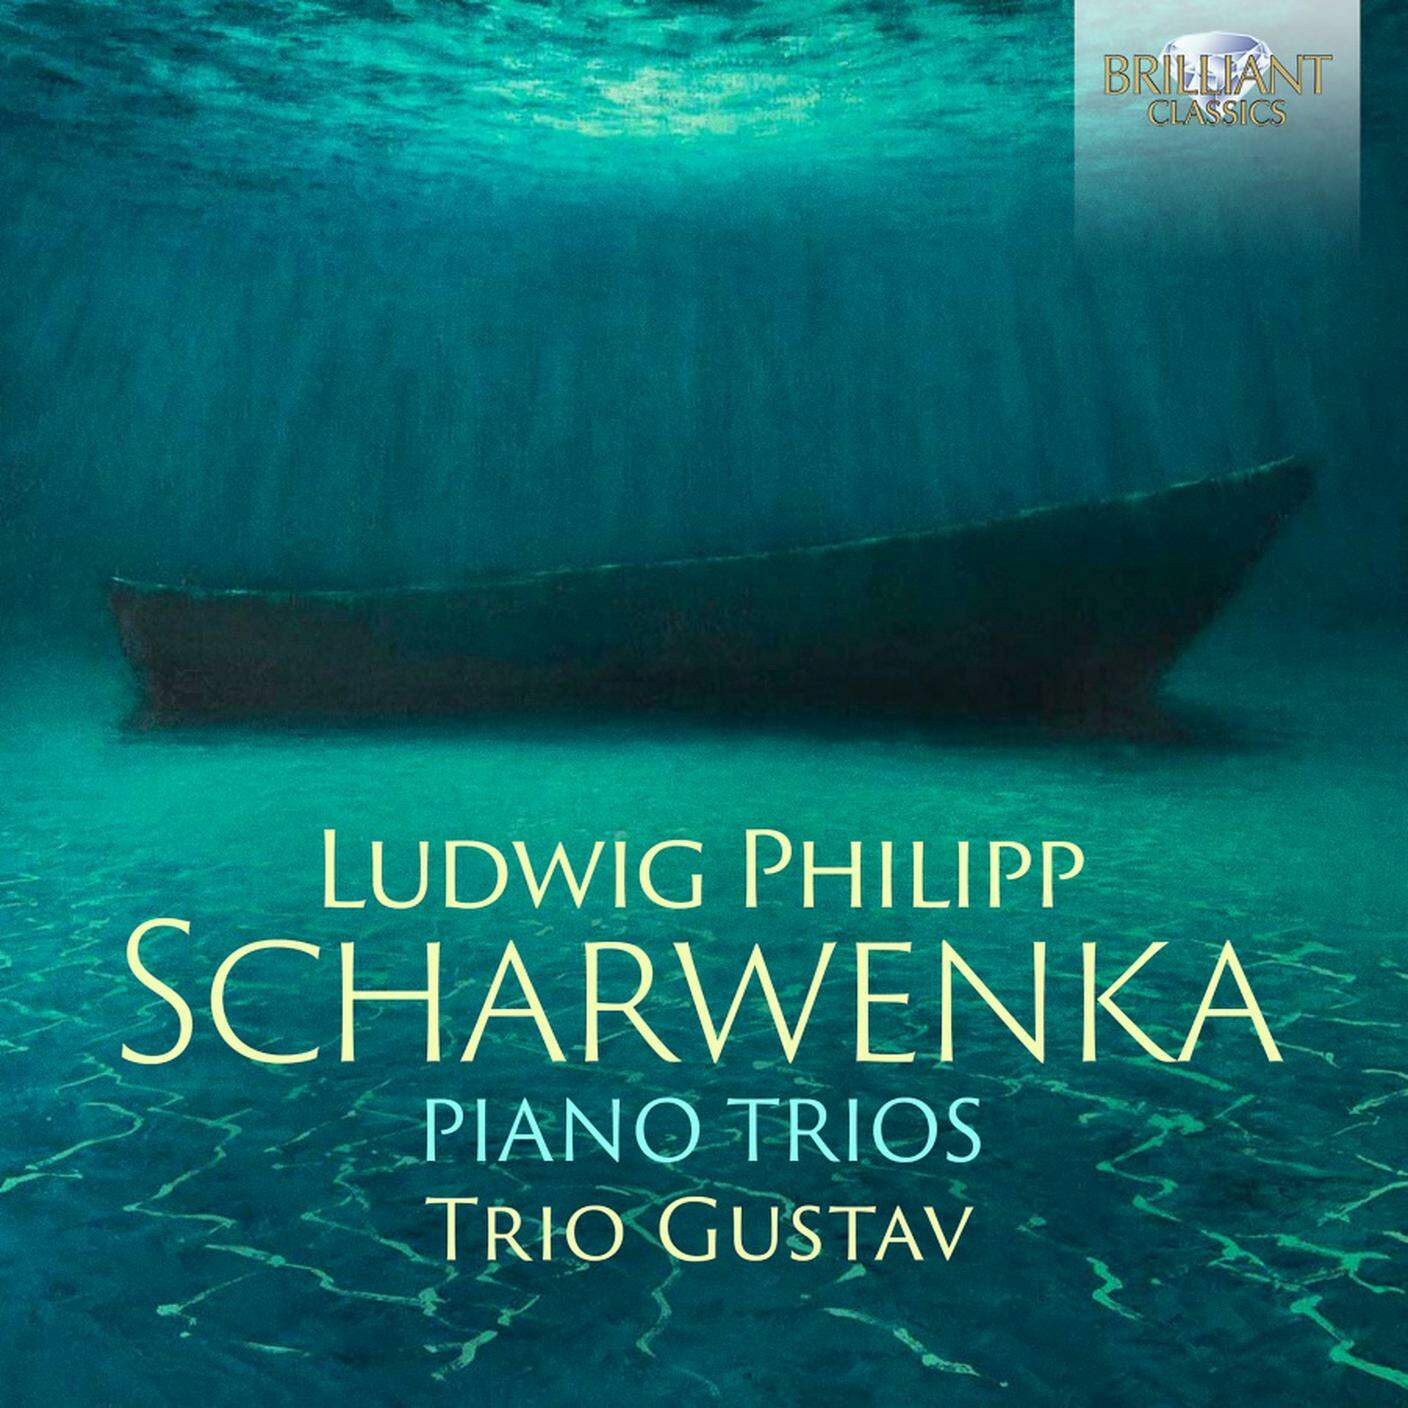 "Ludwig Philipp Scharwenka, Piano Trios", Trio Gustav (dettaglio di copertina)